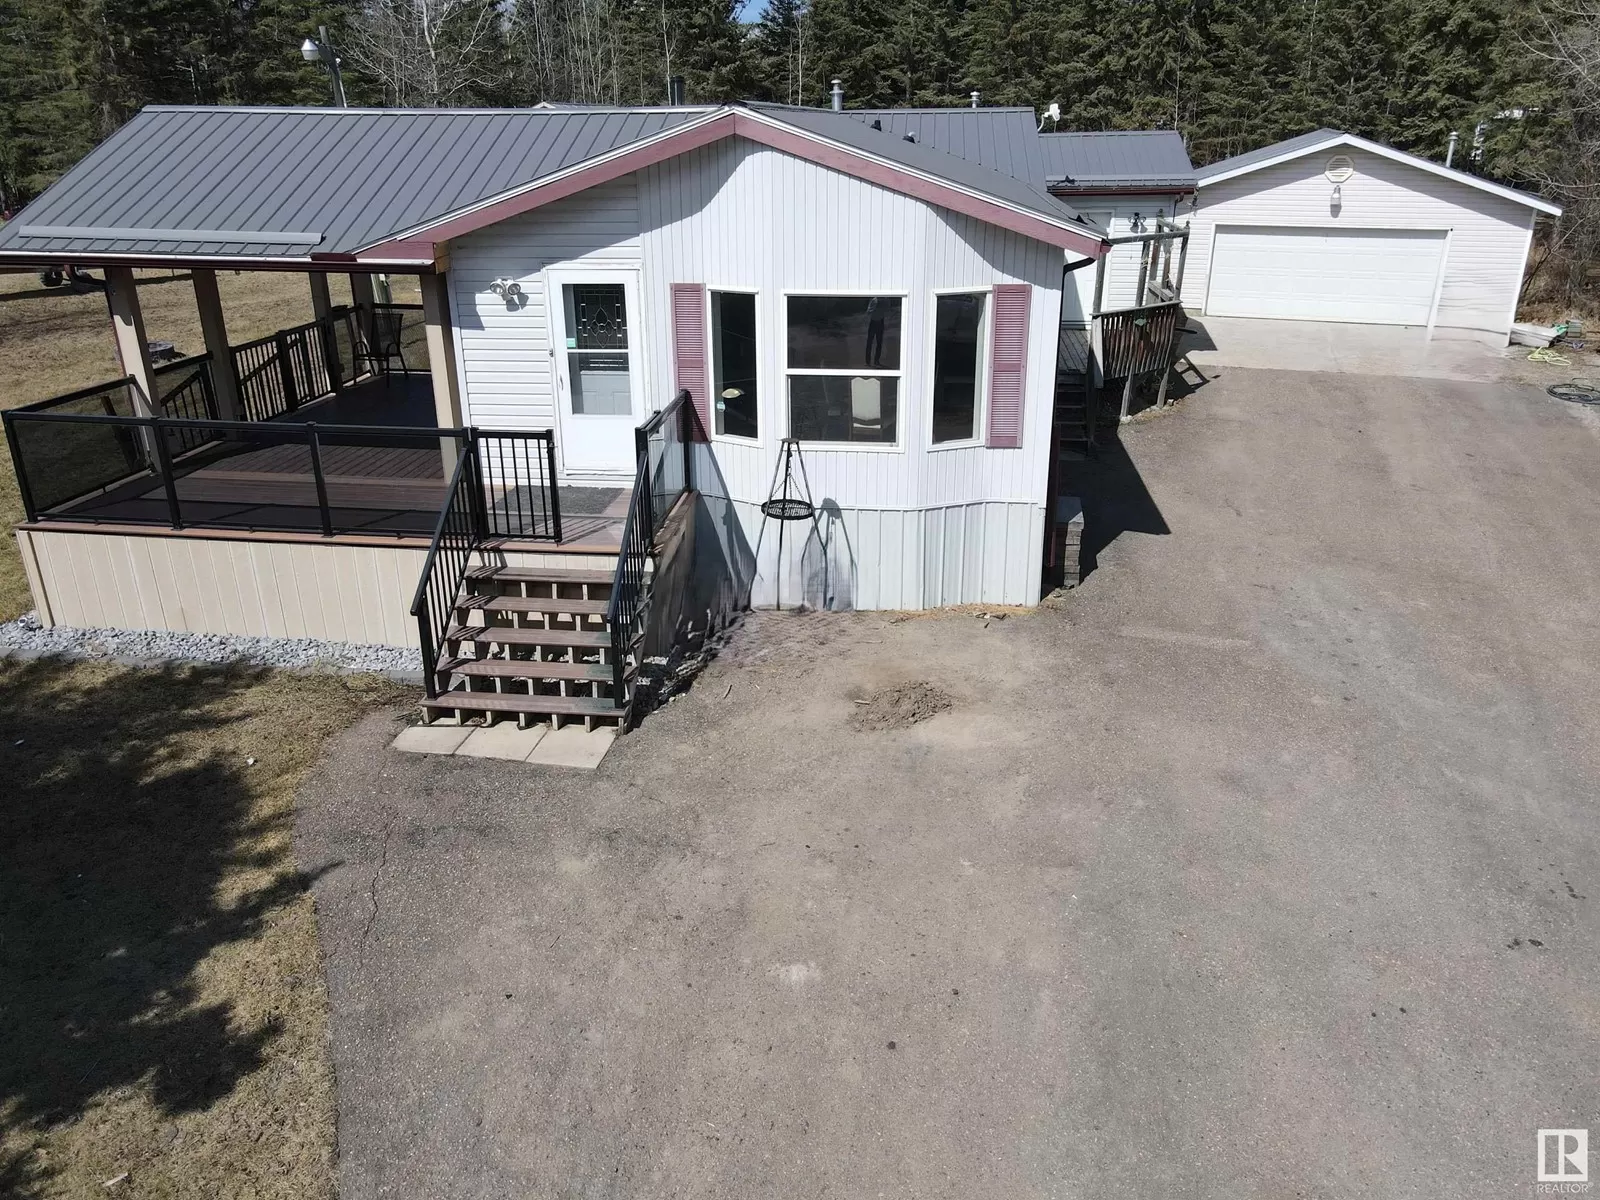 House for rent: 104 44428 Twp Rd 640, Rural Bonnyville M.D., Alberta T9N 2J6